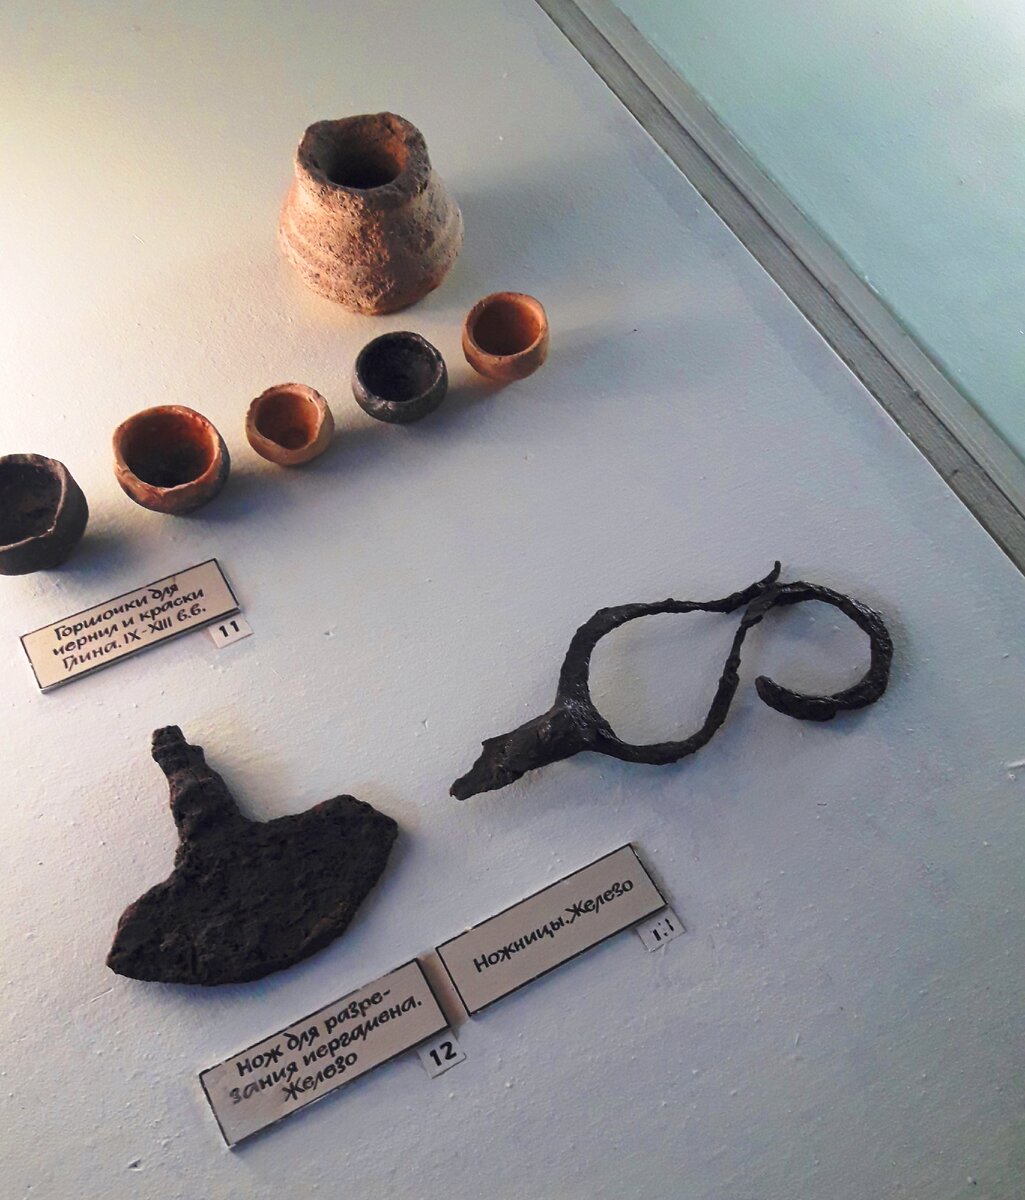 Архелогические находки в музее Херсонеса (Крым): красивое стекло со смальтой и древние монеты античного времени